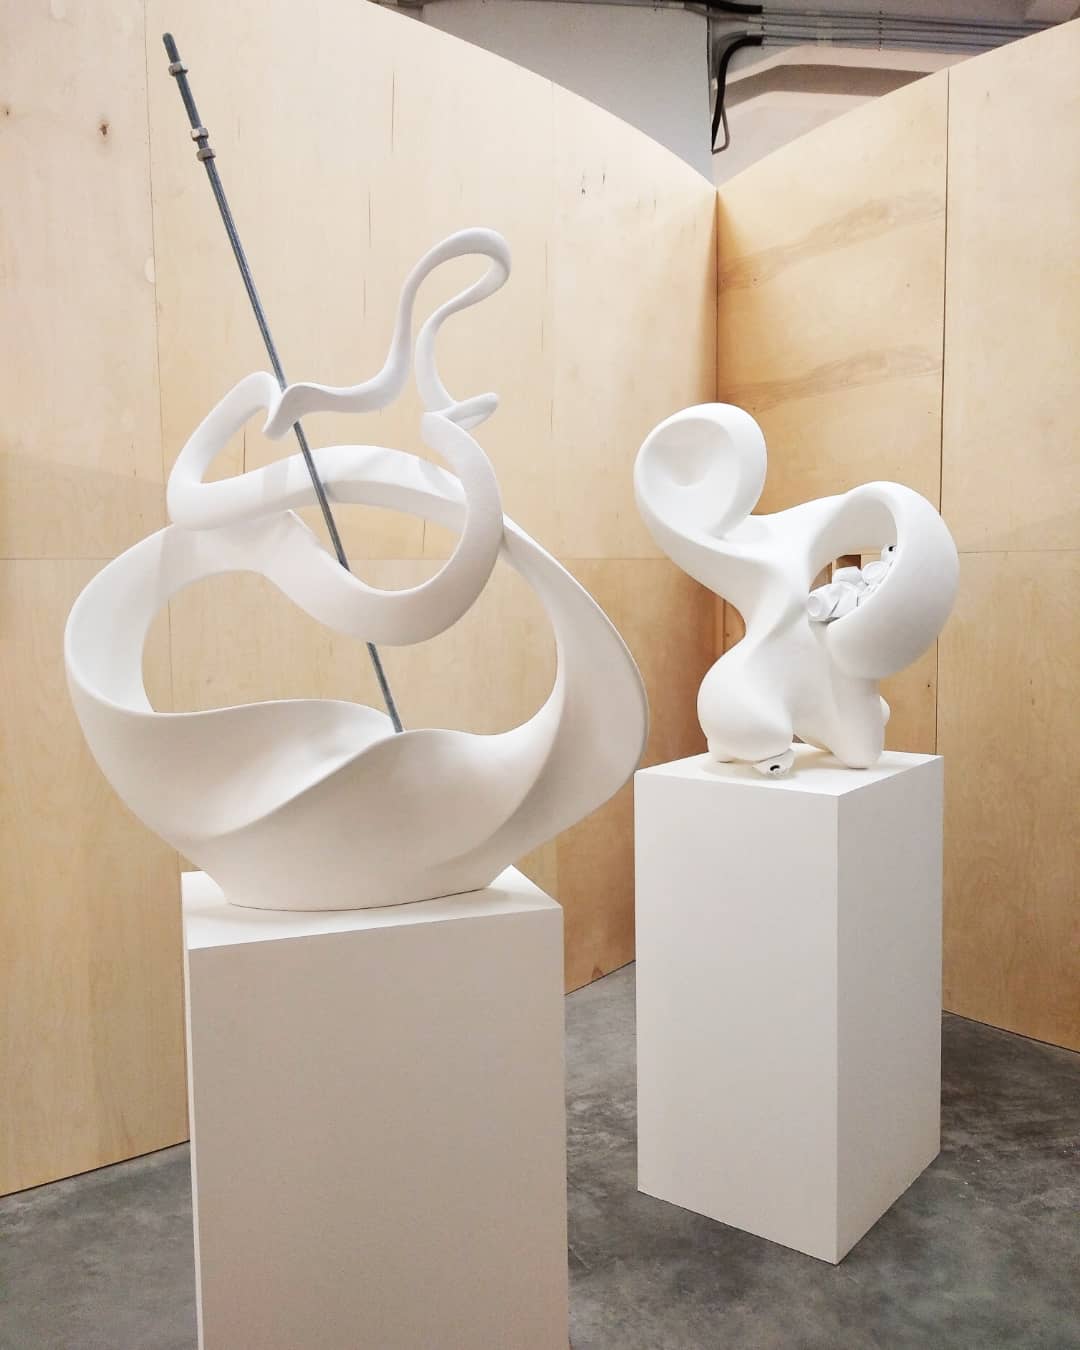 Работы выставки "Абстрактные скульптуры"